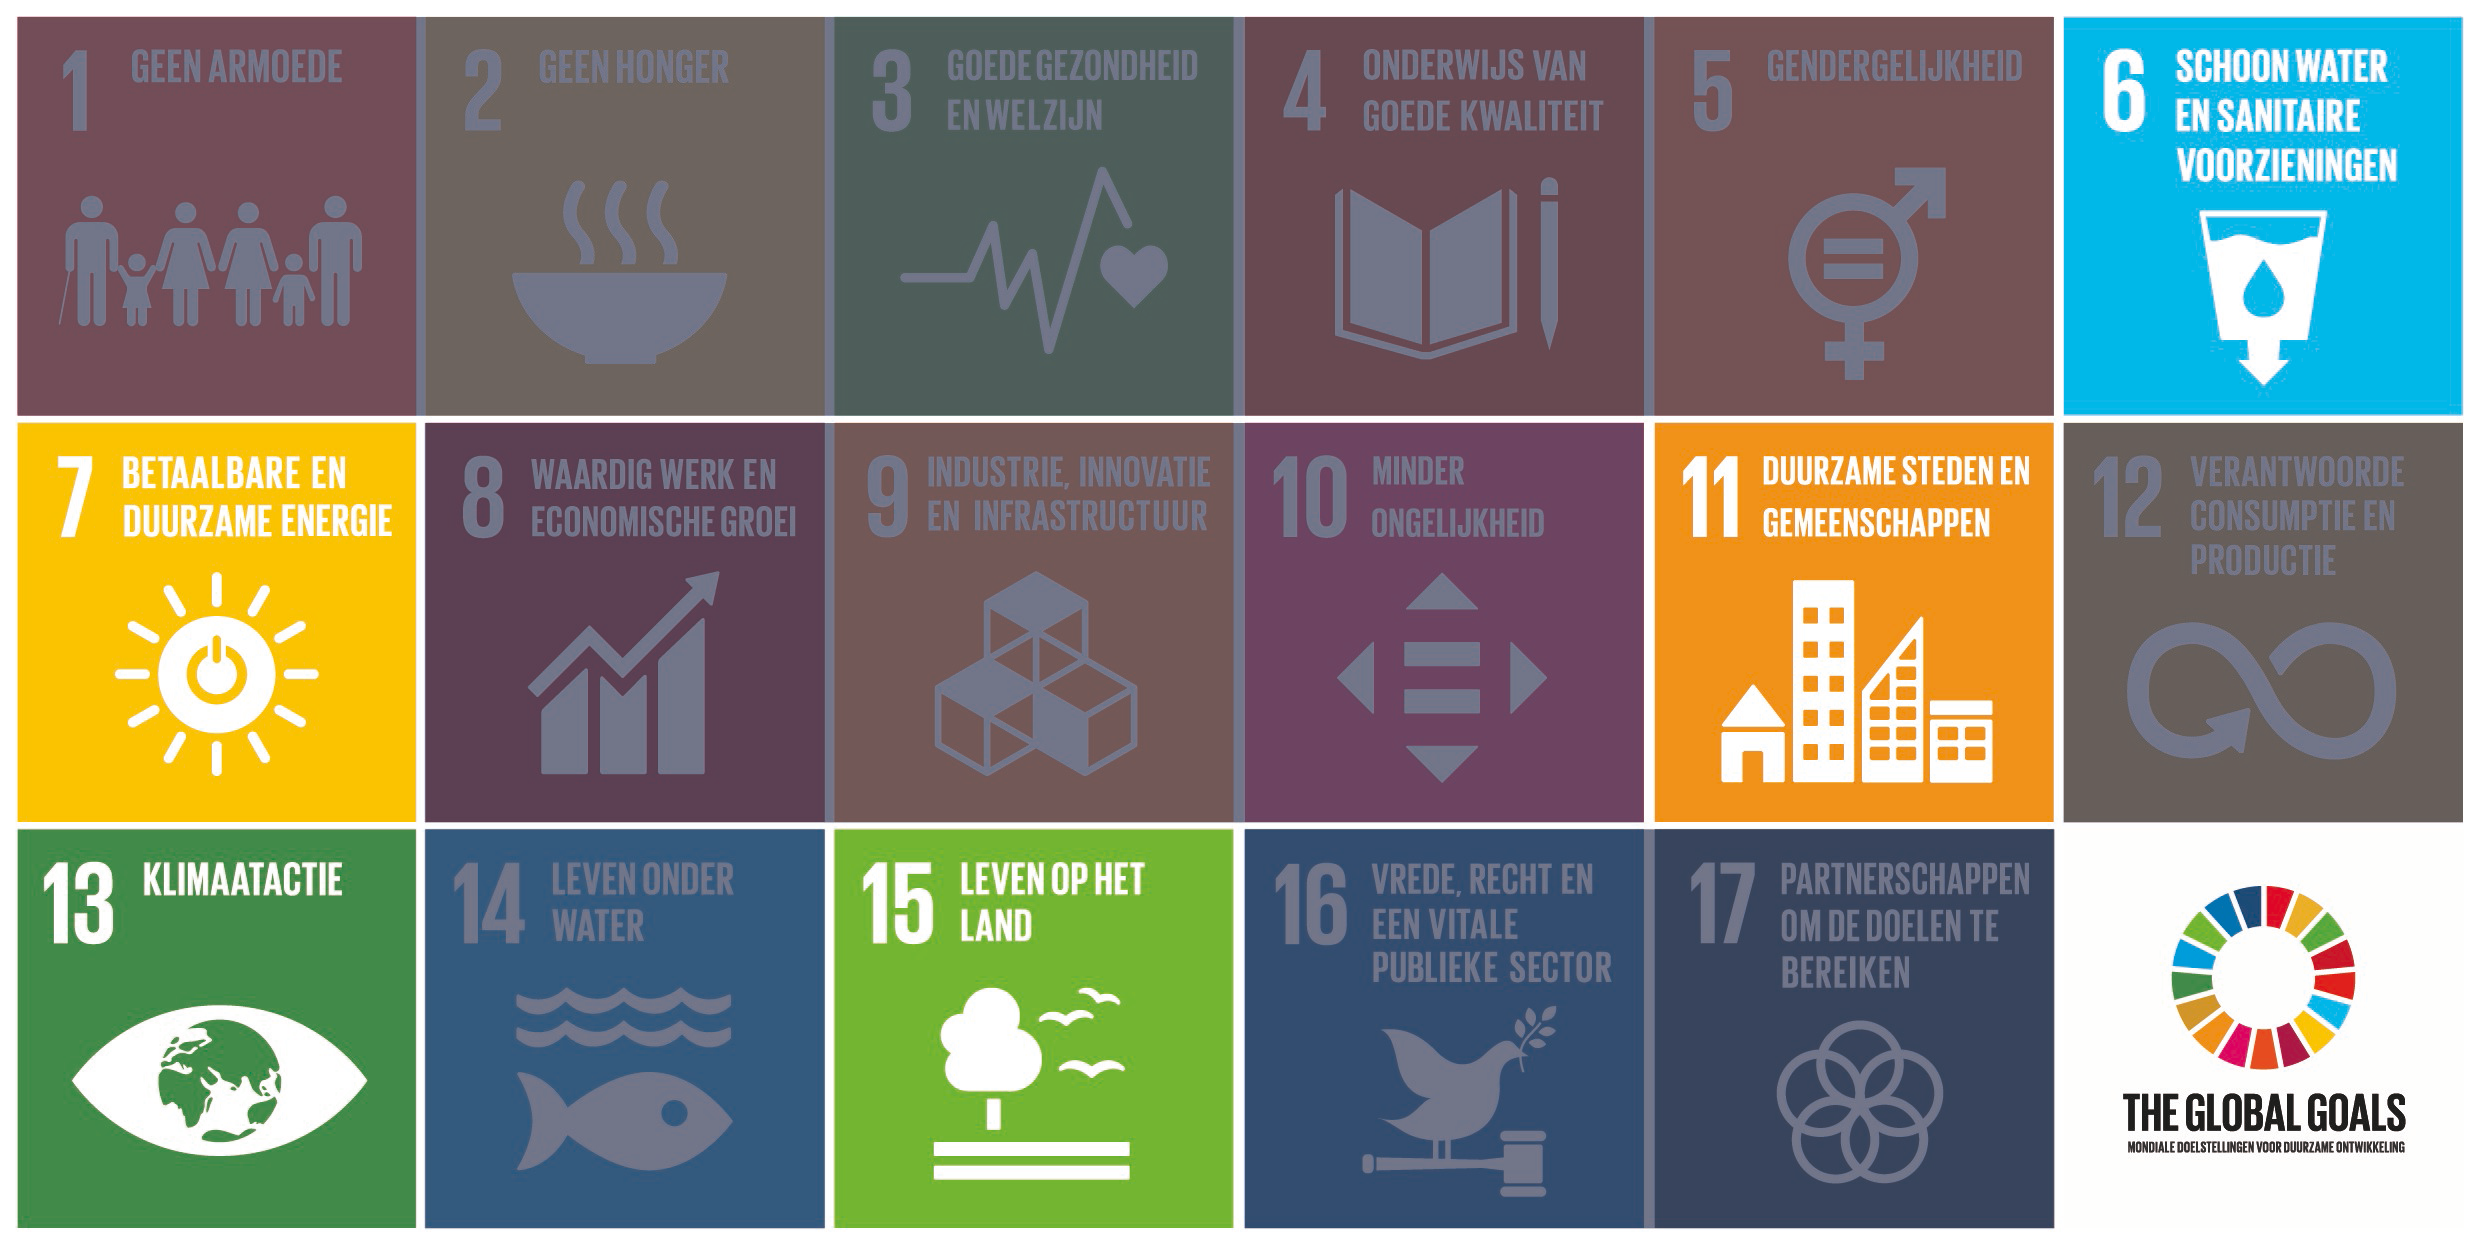 Alle Unesco-gebieden dragen actief bij aan het behalen van de Duurzame Ontwikkelingsdoelen van de VN.